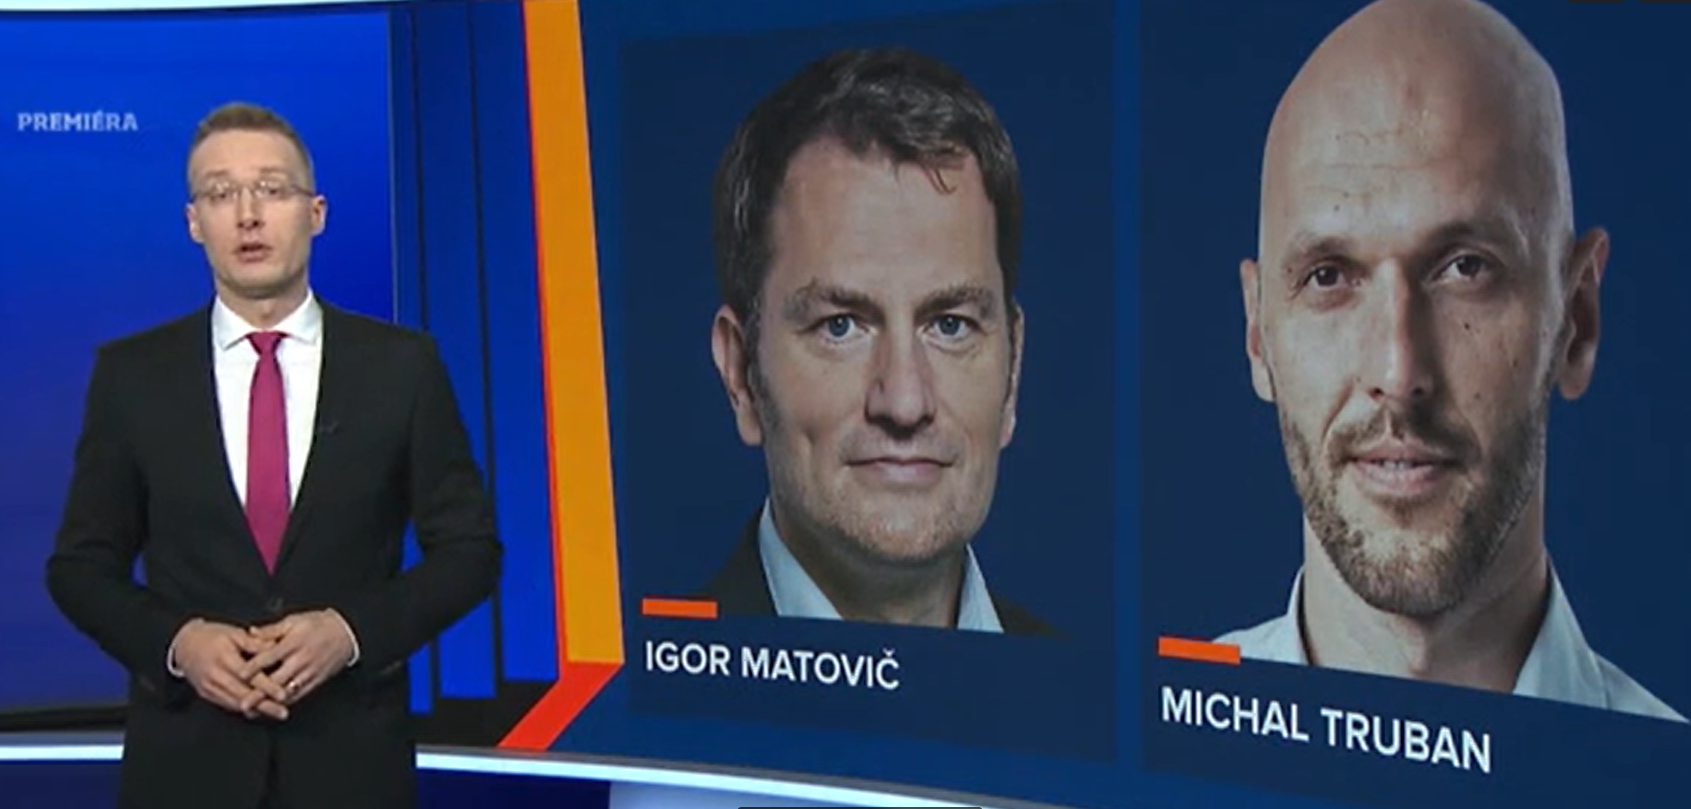 Matovič elindította az internetes szavazását, nem nehéz többször is voksolni